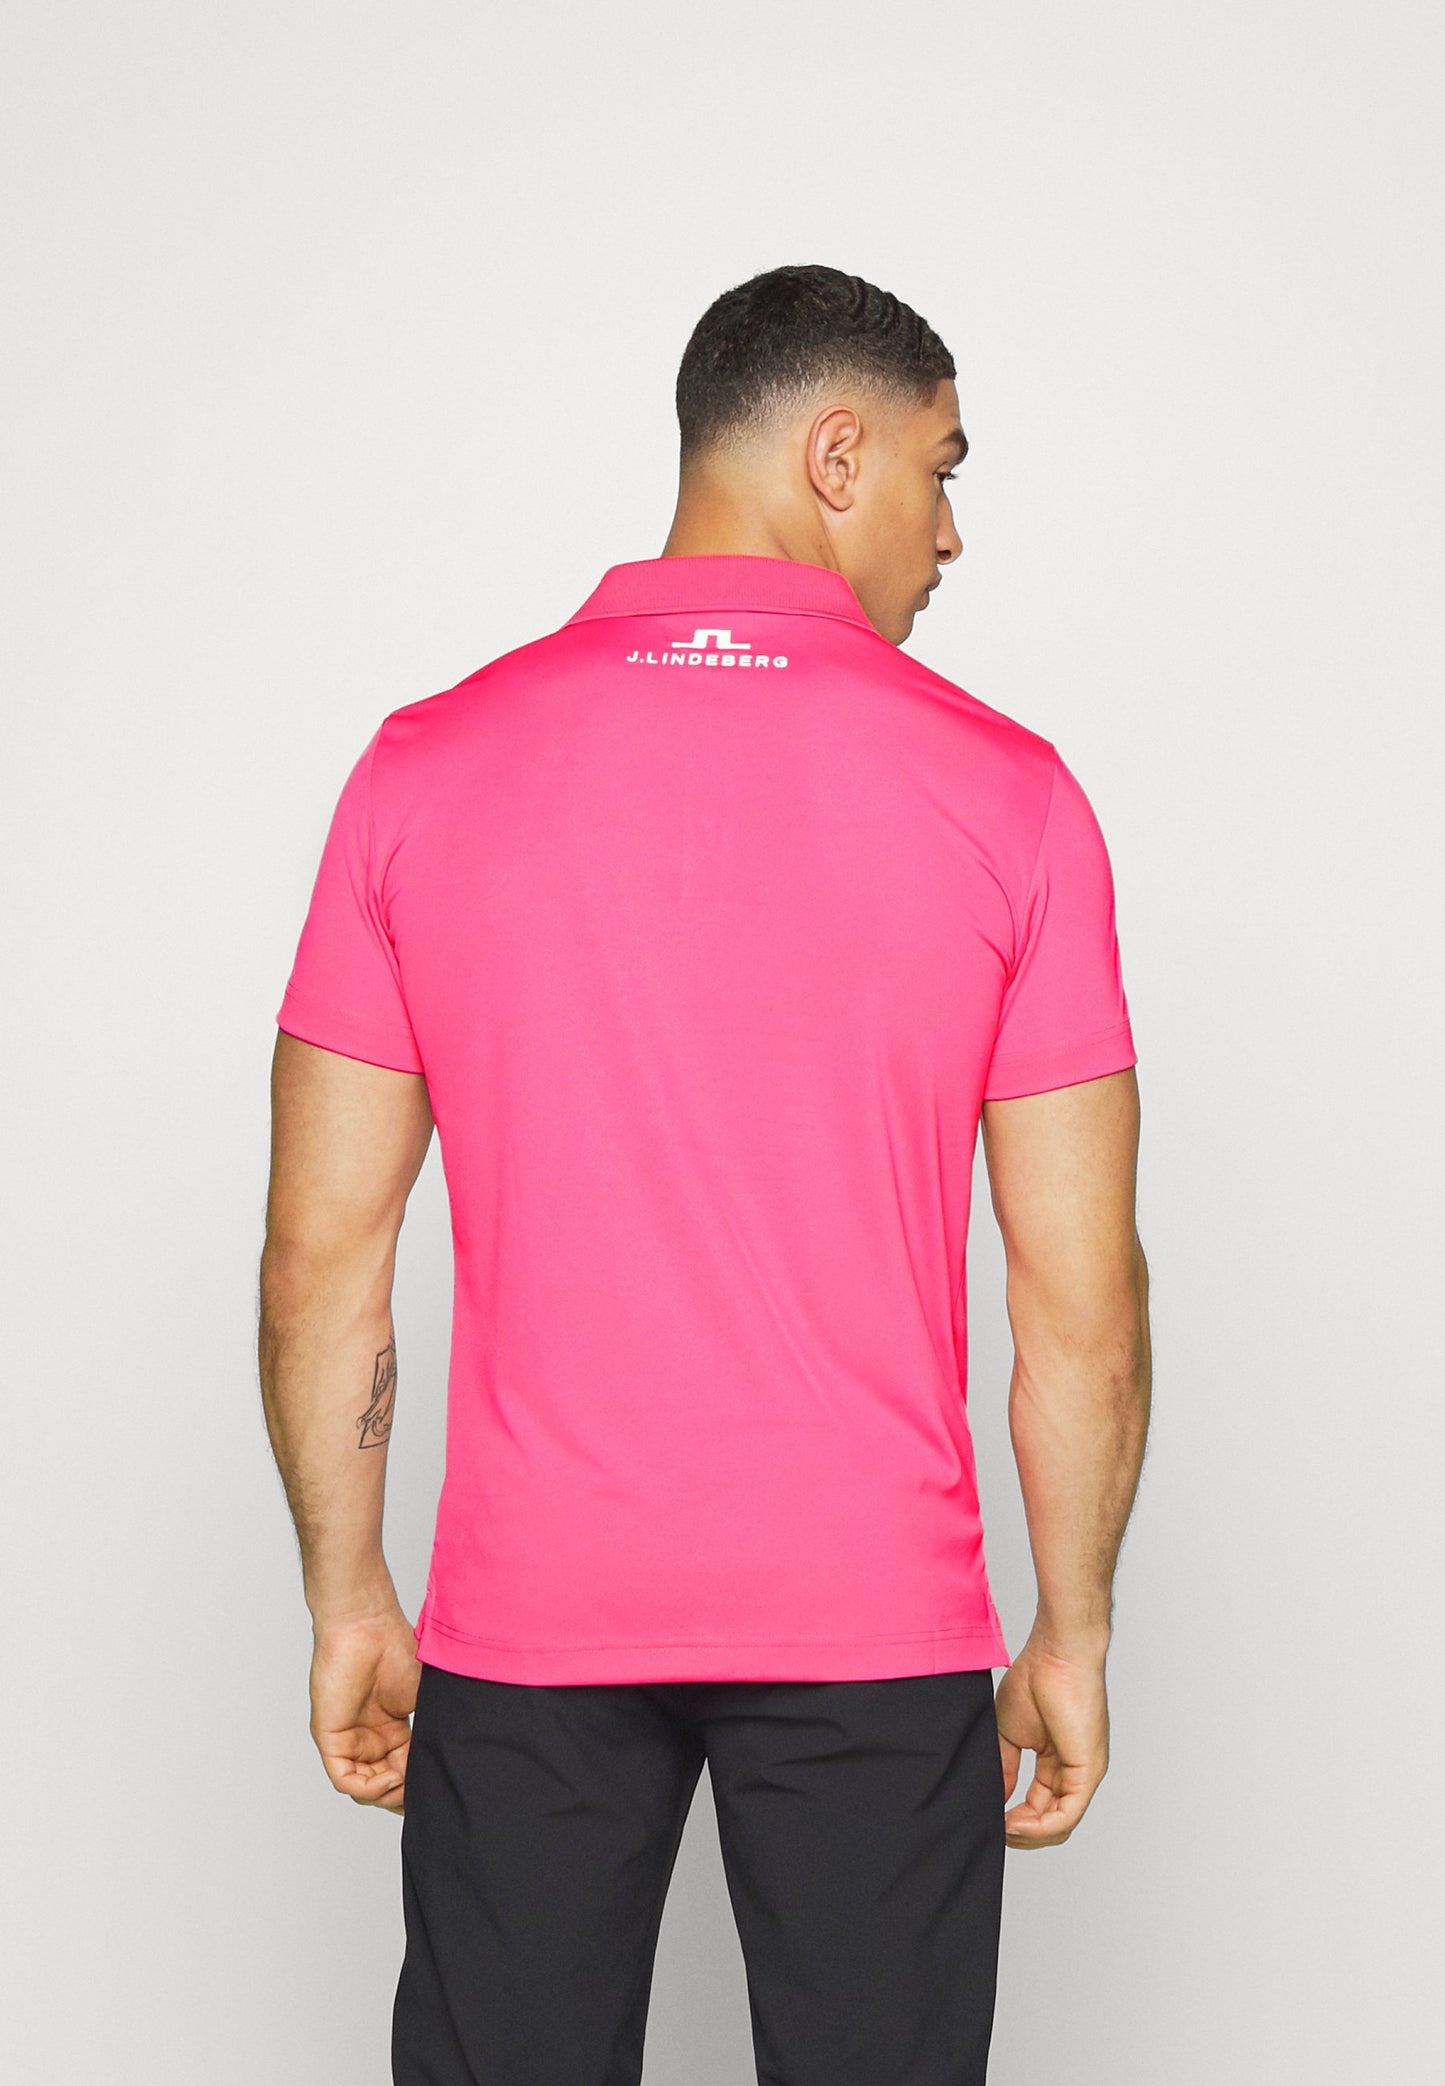 J.LINDEBERG.Tour Logo Chad Slim Fit TX Jersey Hot Pink-GMJT06916